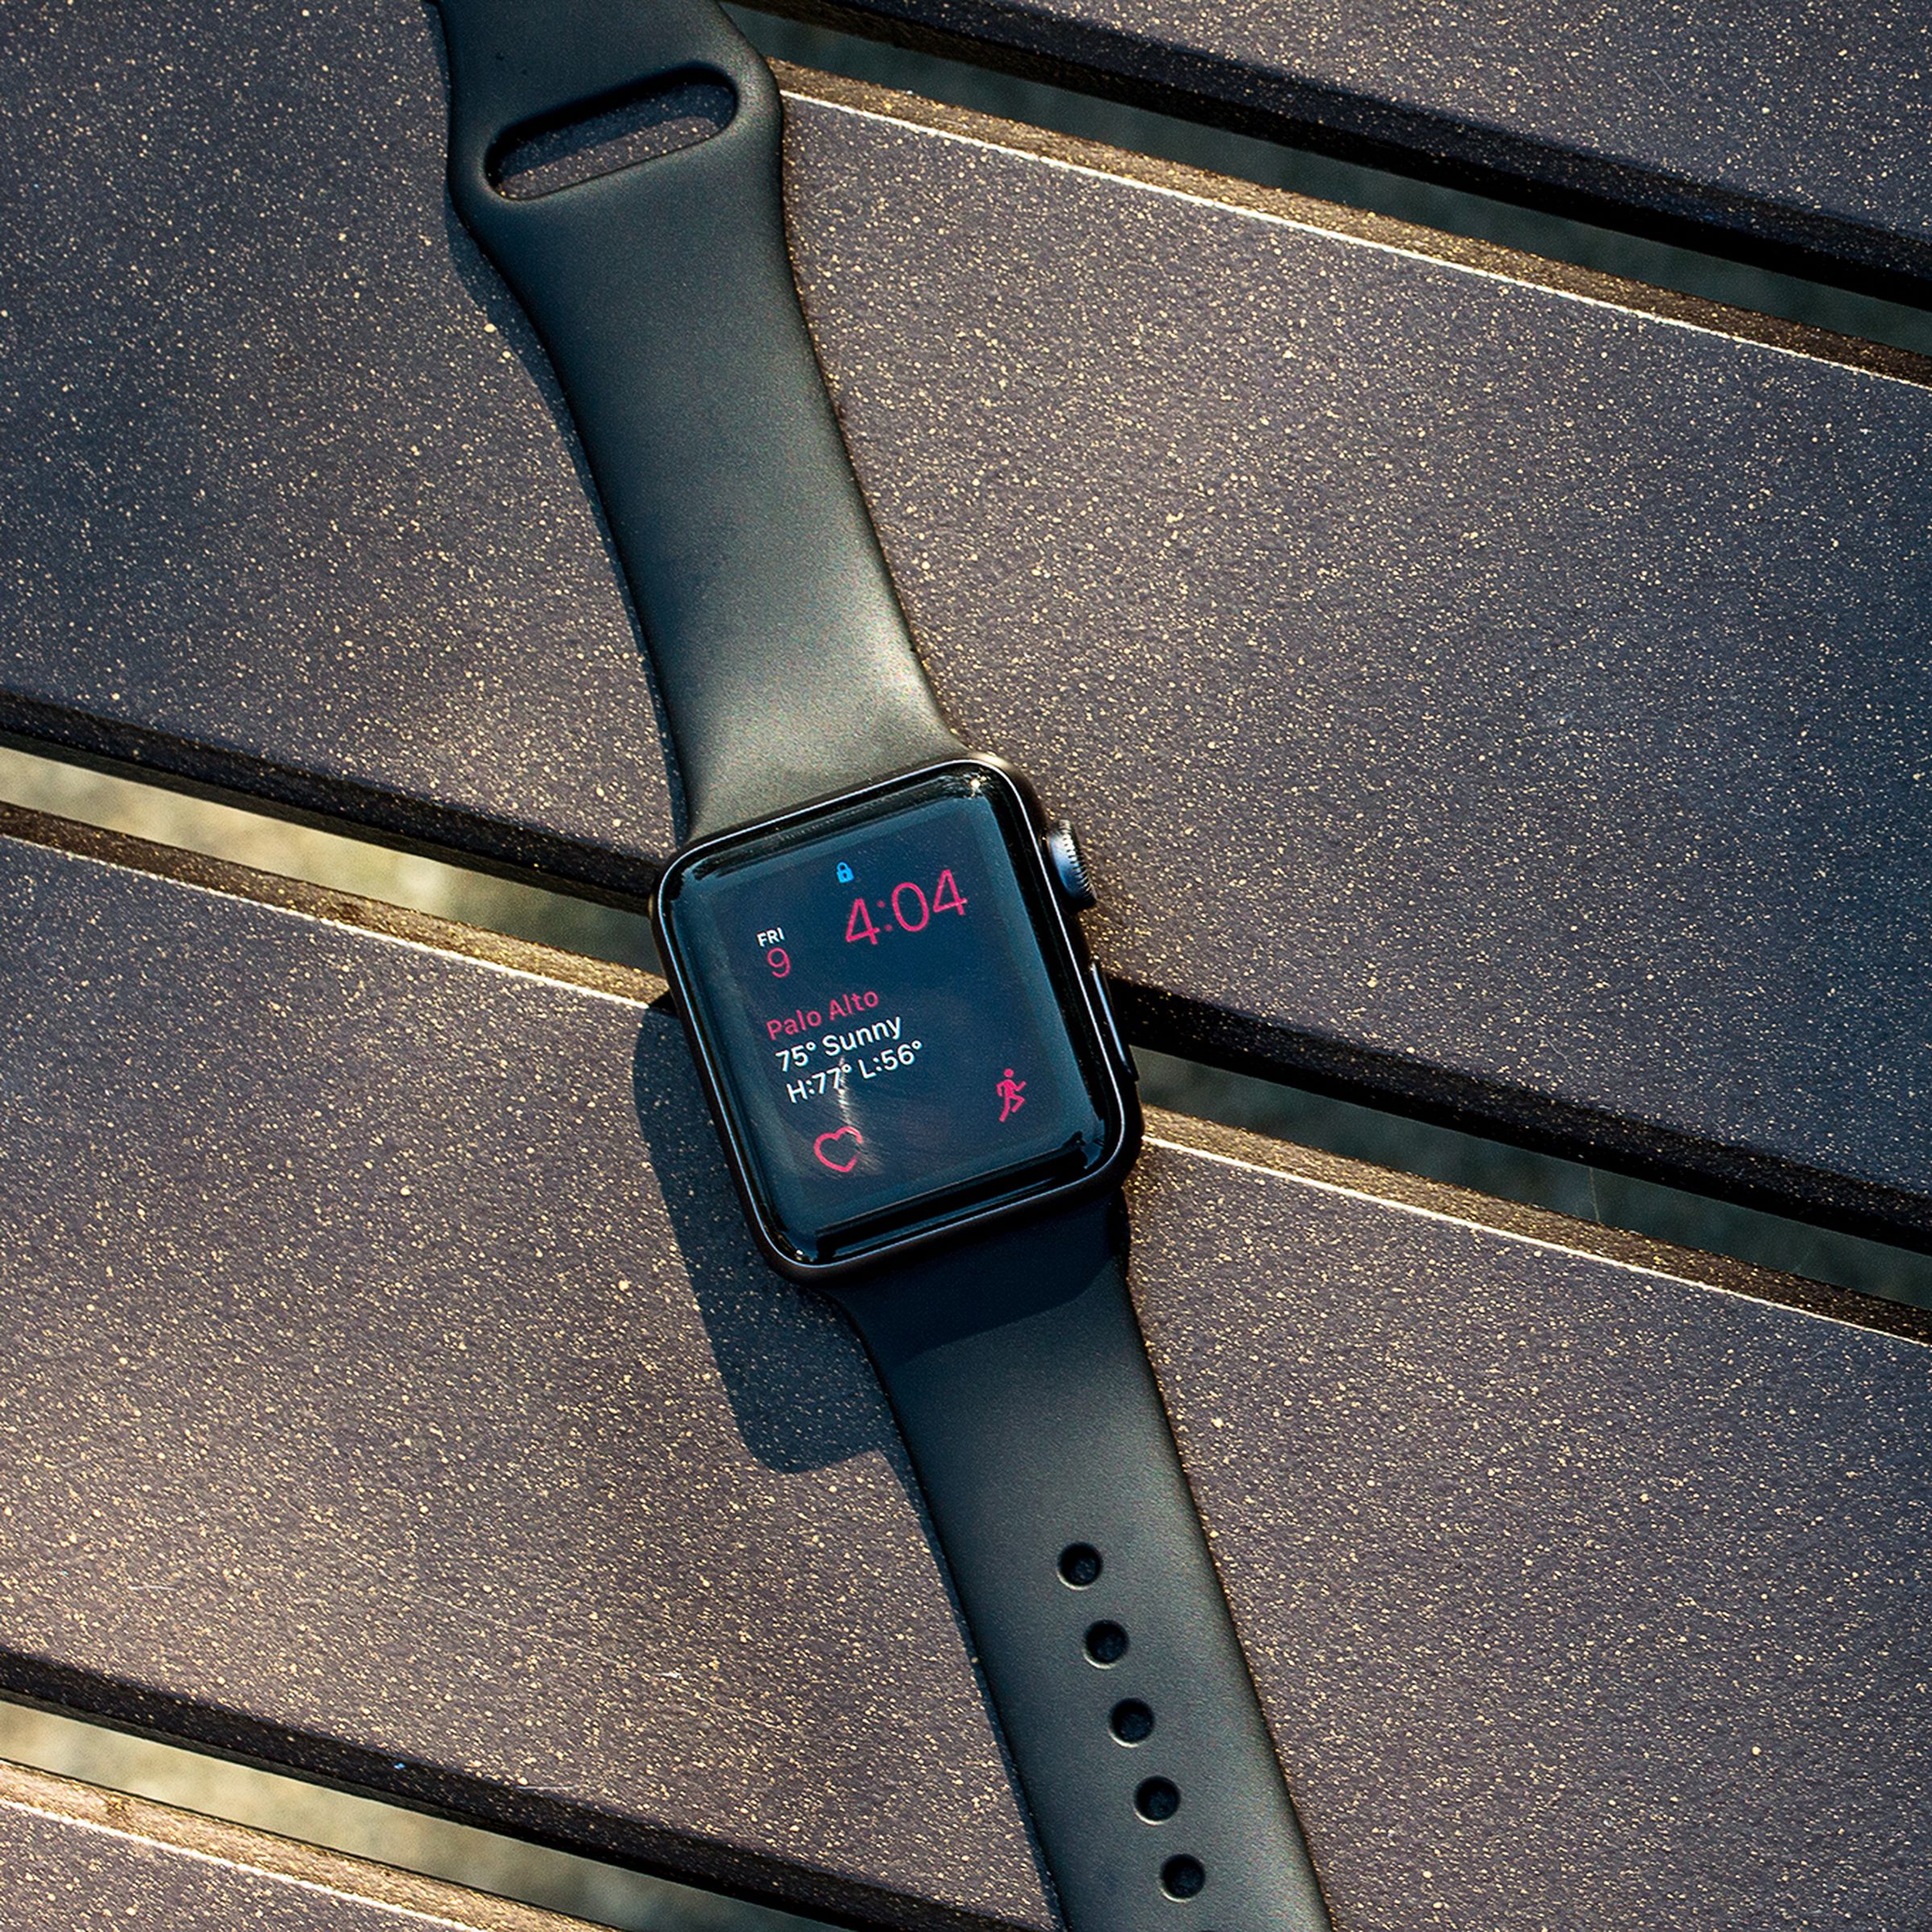 An Apple Watch running WatchOS 3